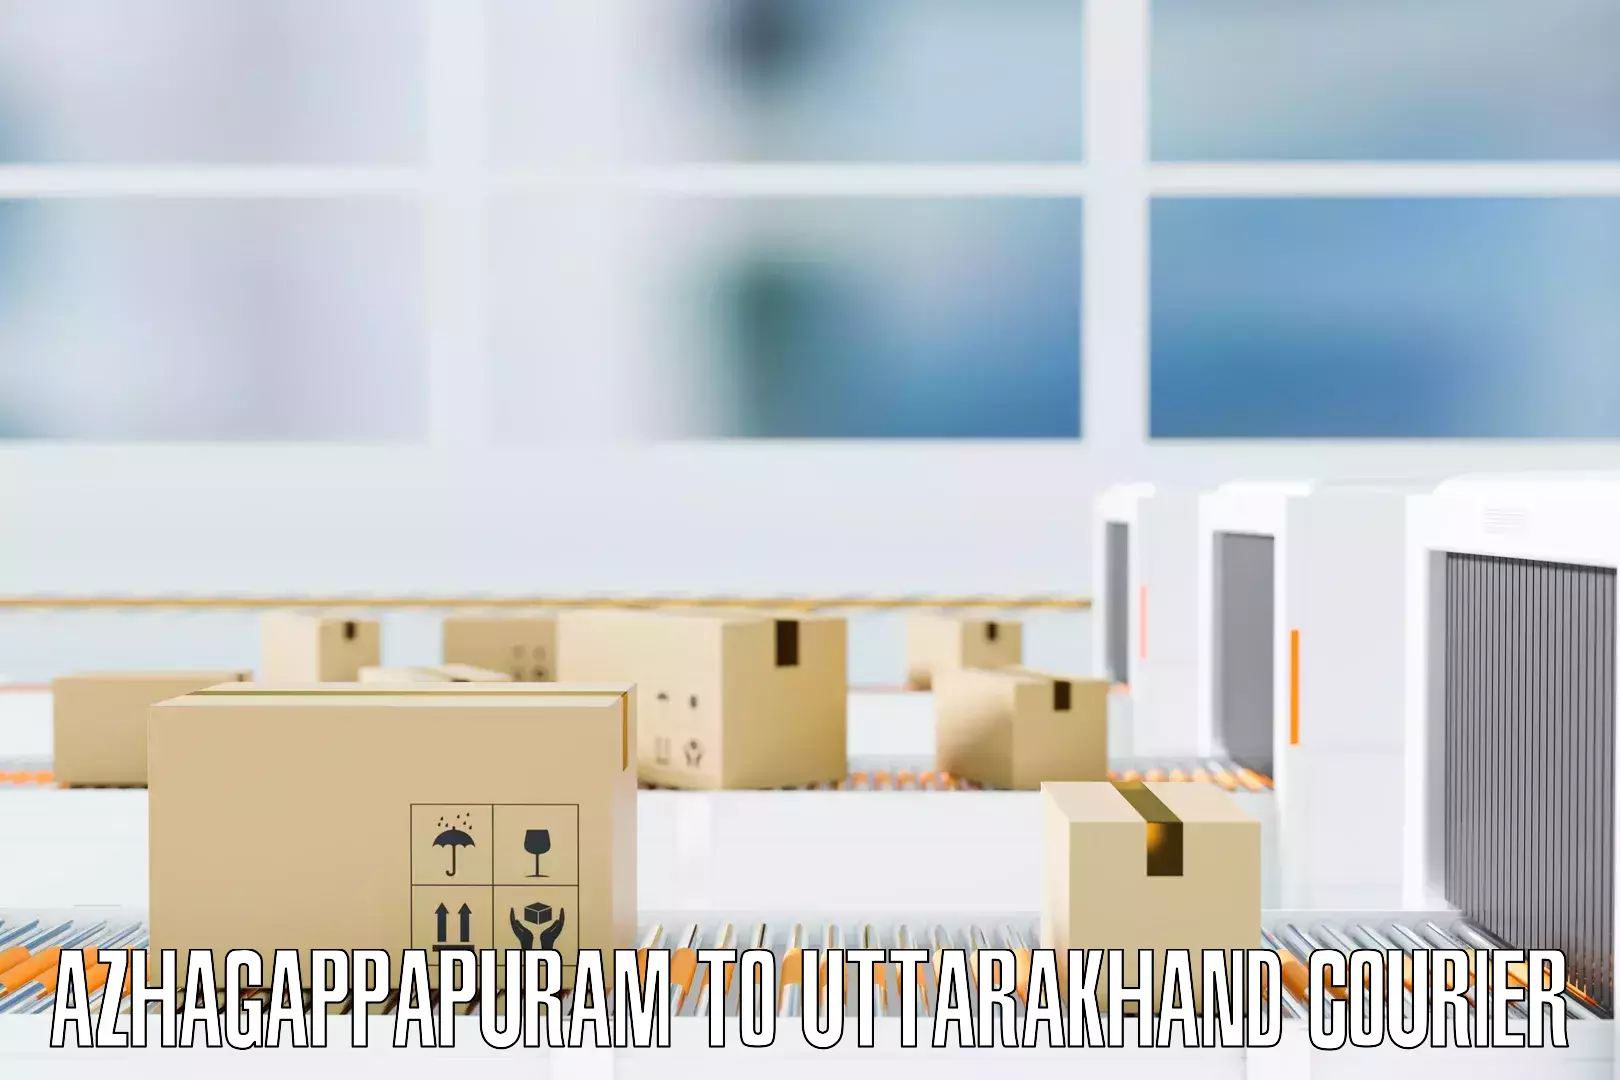 Efficient home relocation Azhagappapuram to IIT Roorkee